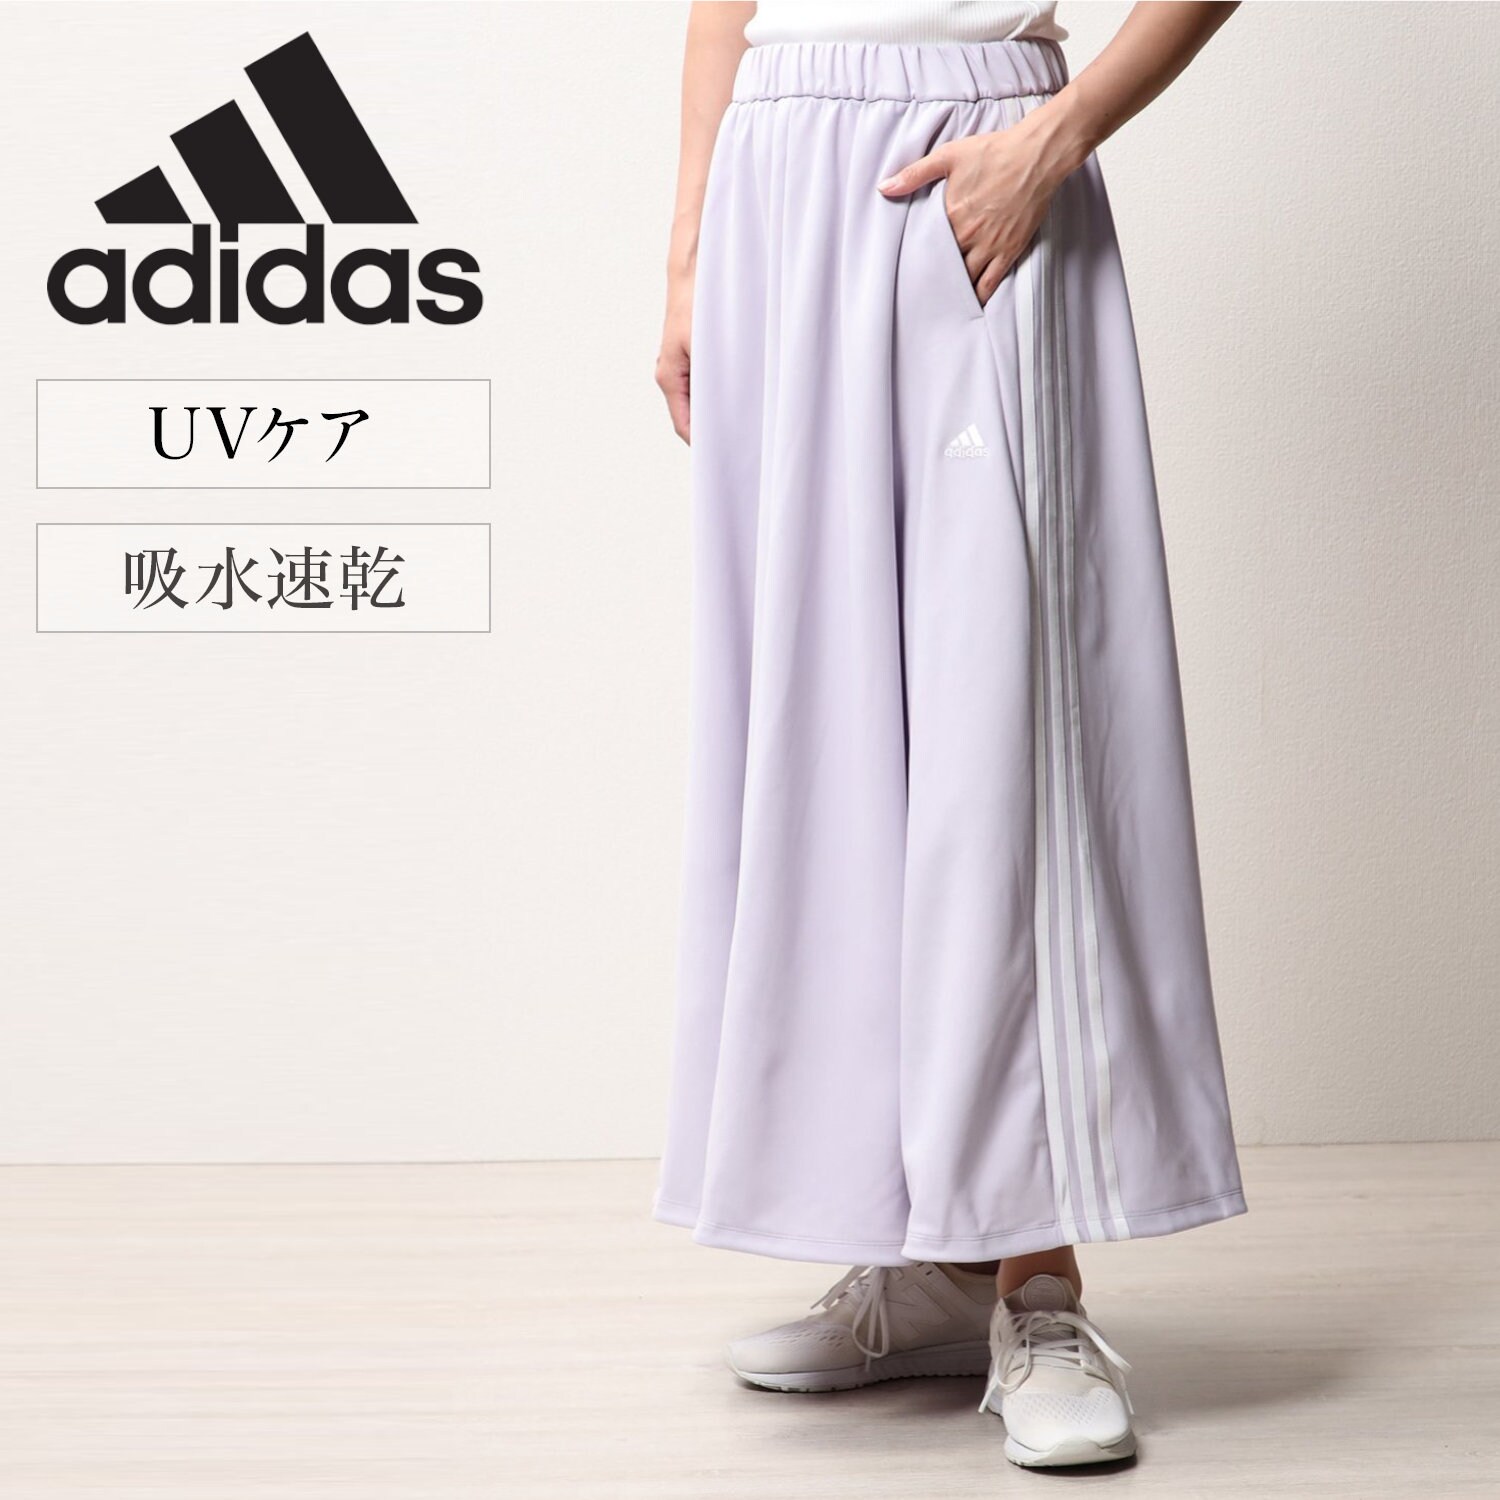 【アディダス/adidas】W MH 3Sスカート